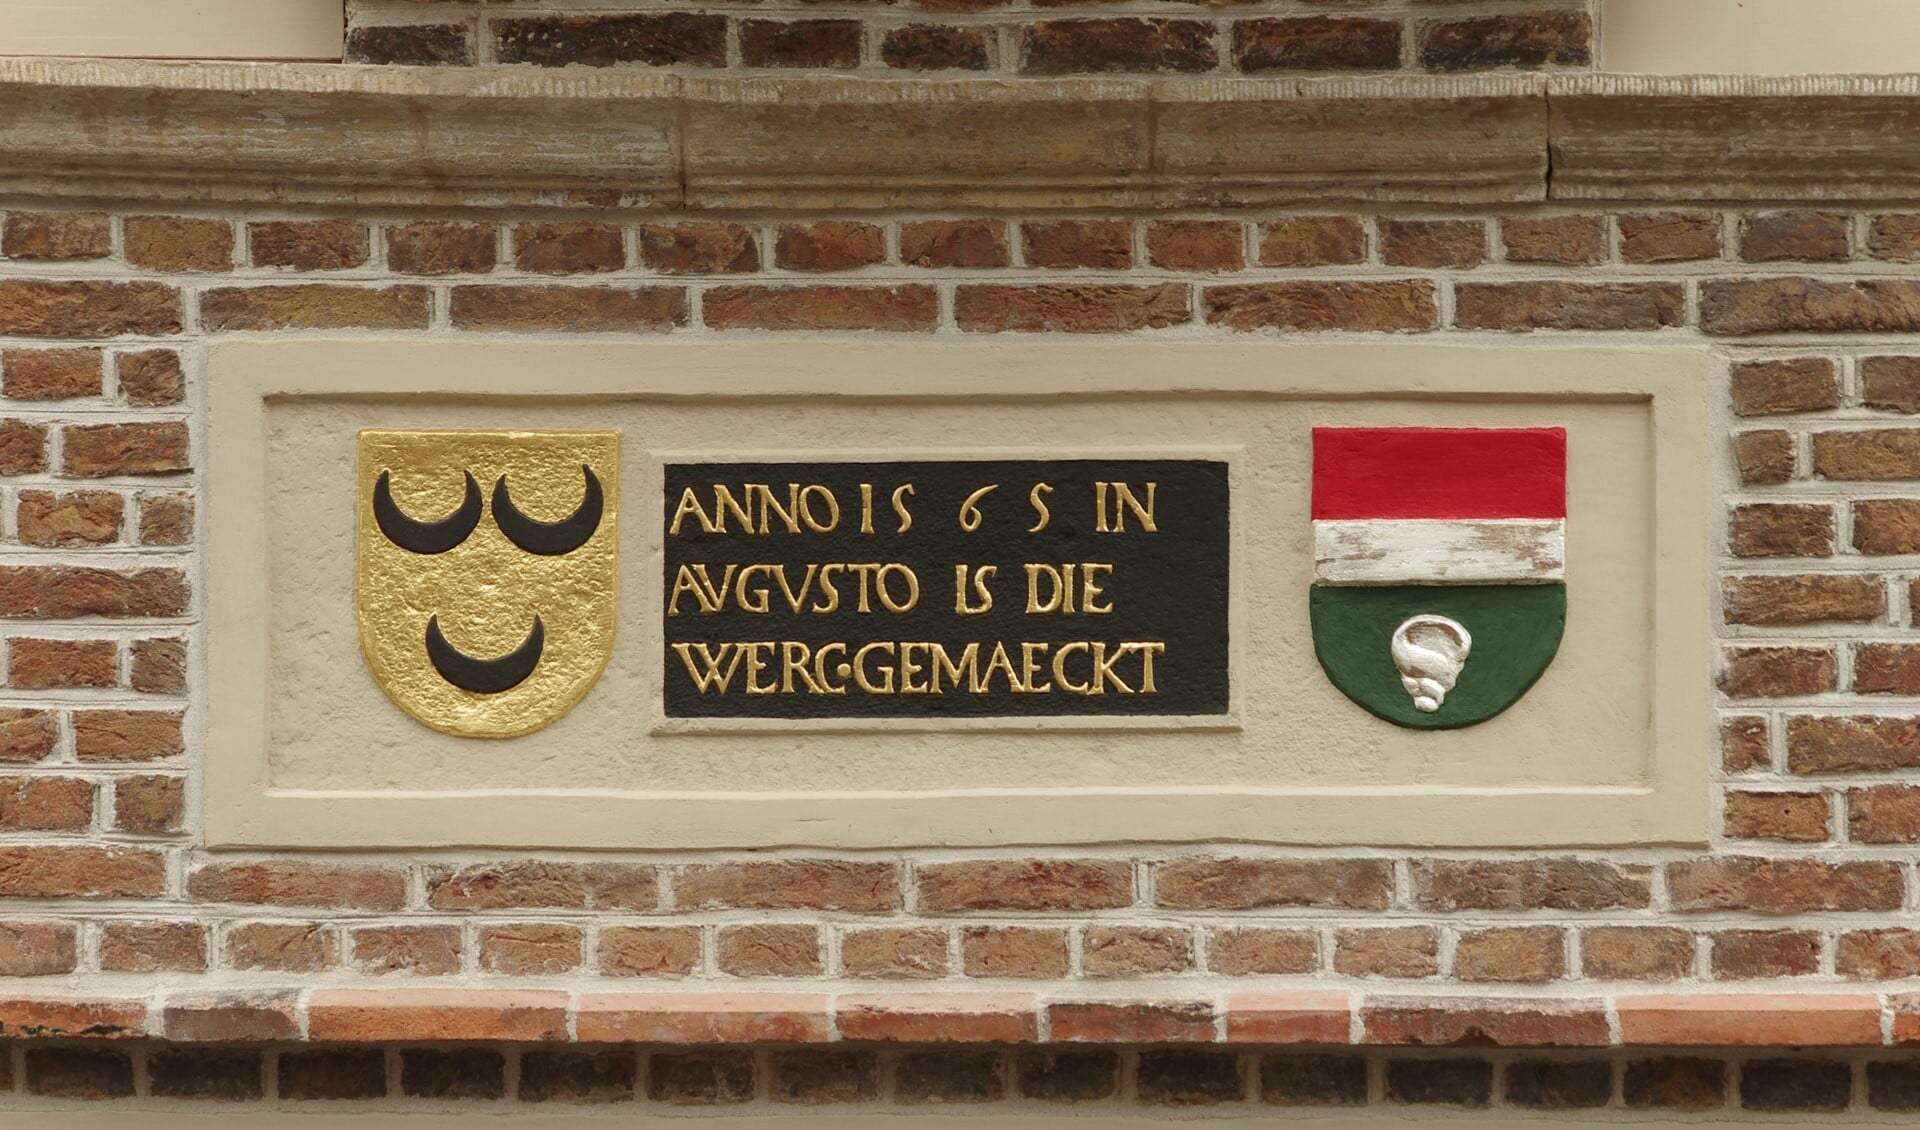 Deze gevelsteen is te zien in de Langestraat. Een fraai voorbeeld van restauratie!